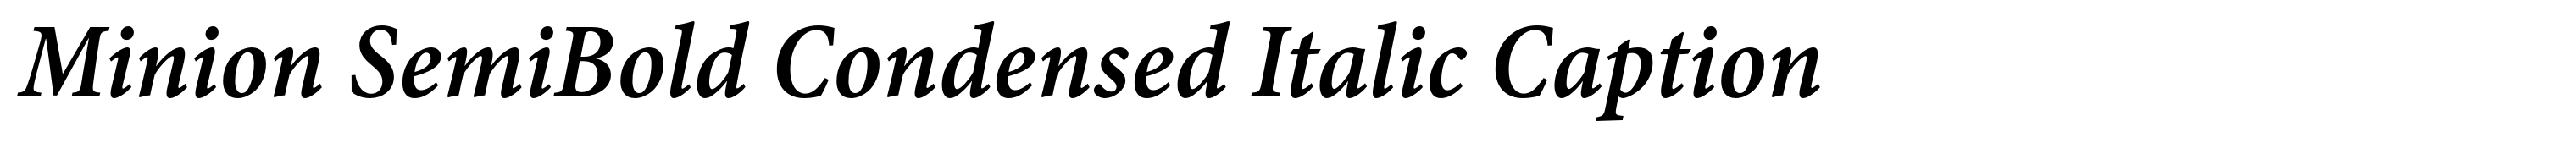 Minion SemiBold Condensed Italic Caption